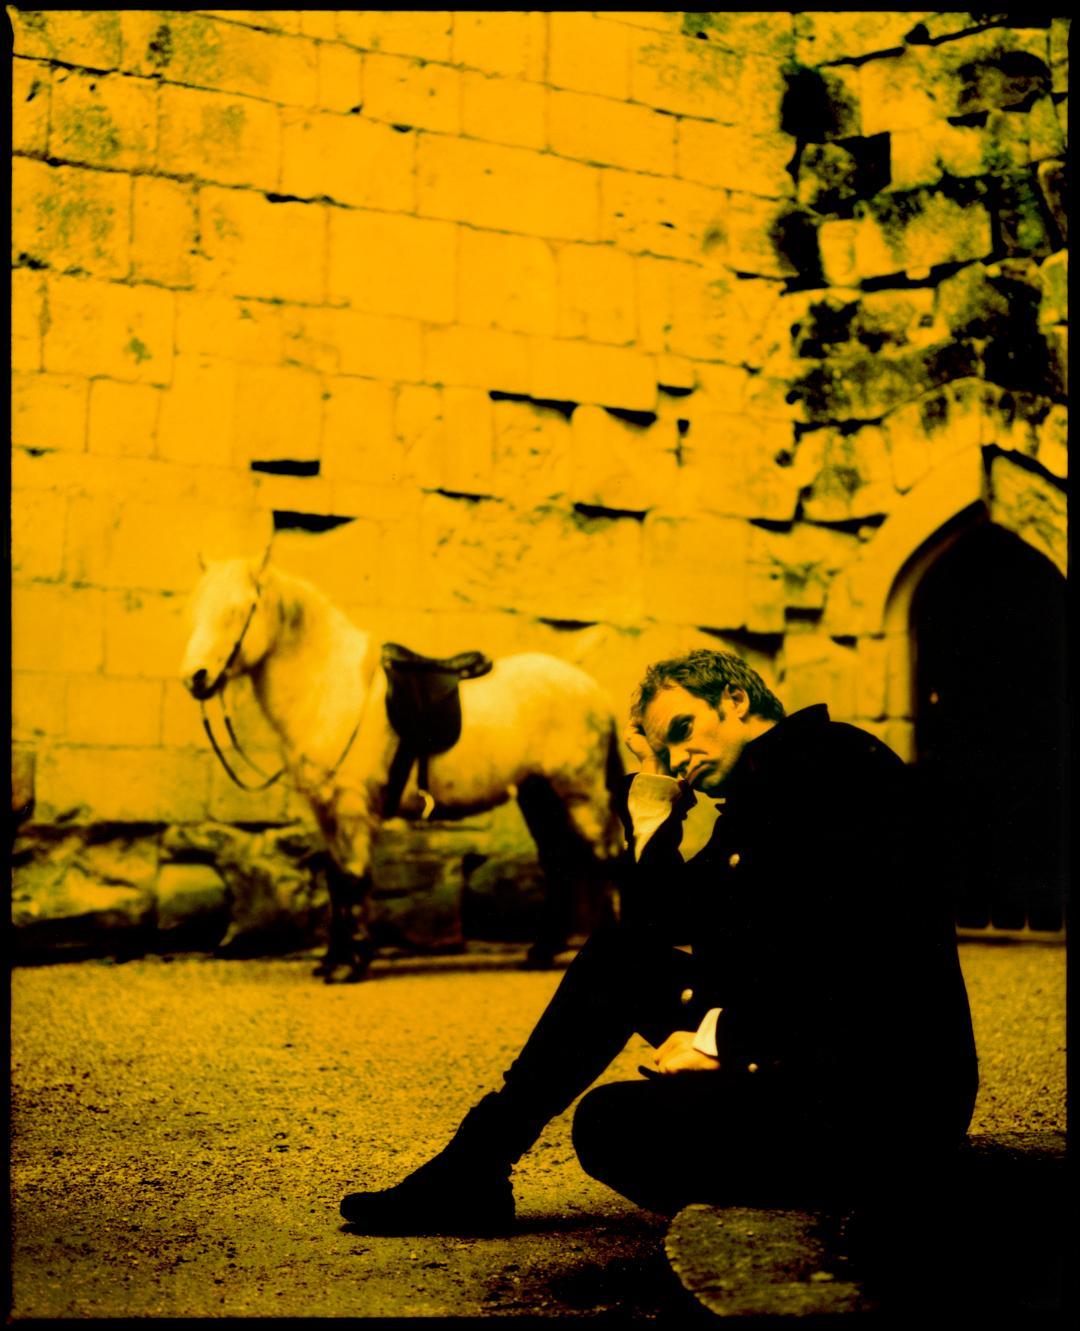 Stachel 

Stings Albumcover-Foto für "Ten Summoners Tales"

2022

von Kevin Westenberg
Signierte limitierte Auflage

Kevin Westenberg ist seit über 25 Jahren für seine provokanten und elektrisierenden Bilder von Weltklasse-Musikern, Künstlern und